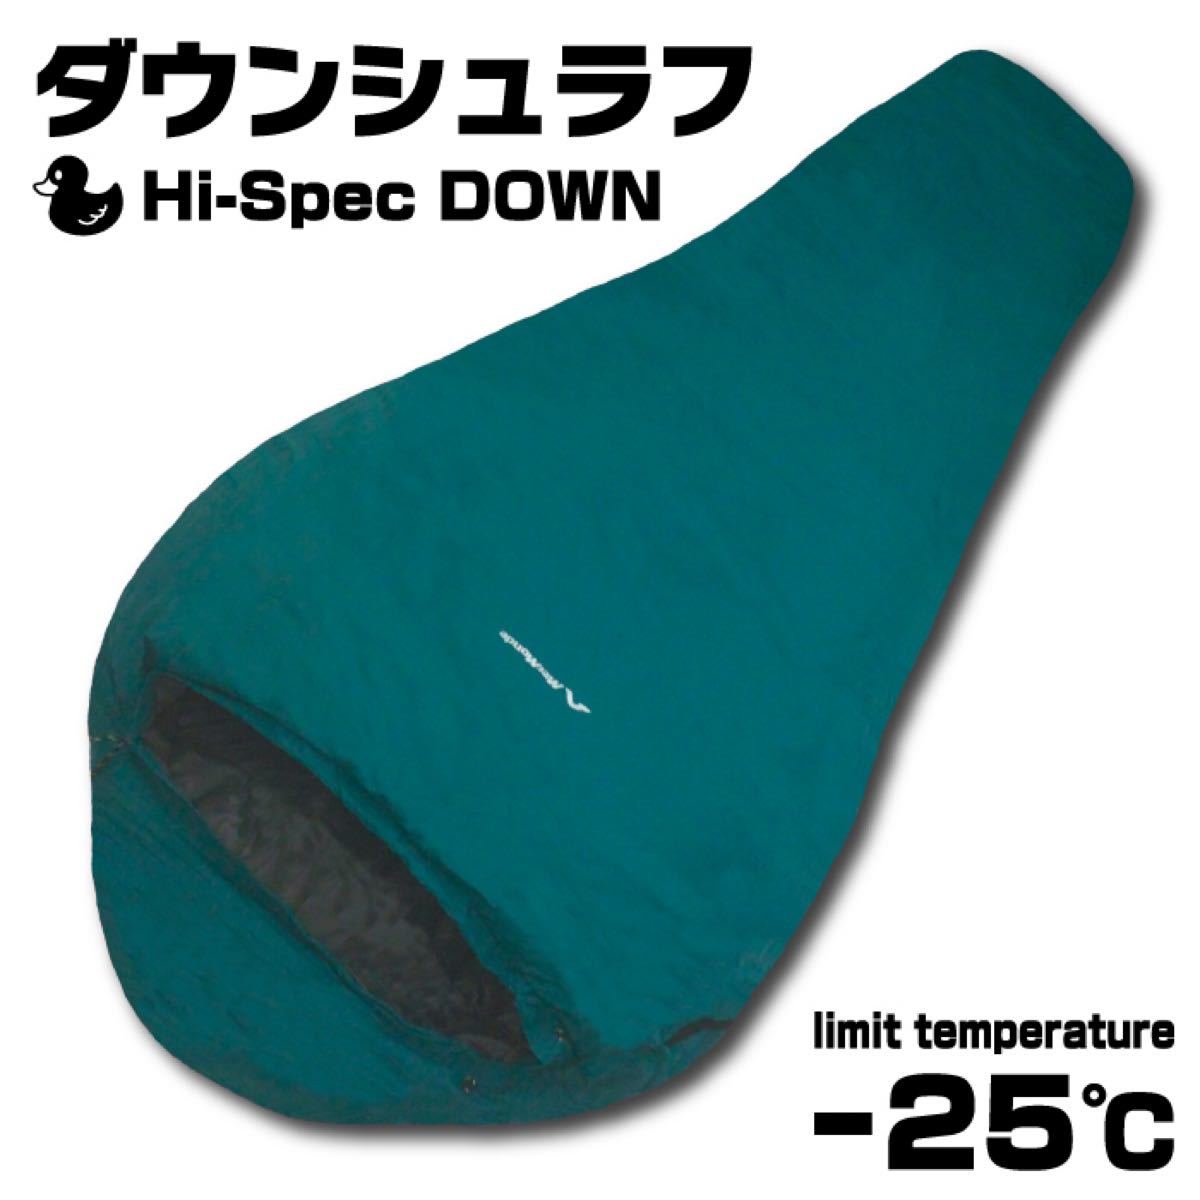 【限定特価】 高級ダウン シュラフ 寝袋 -25℃ マミー型 キャンプ 車中泊 登山 グリーン